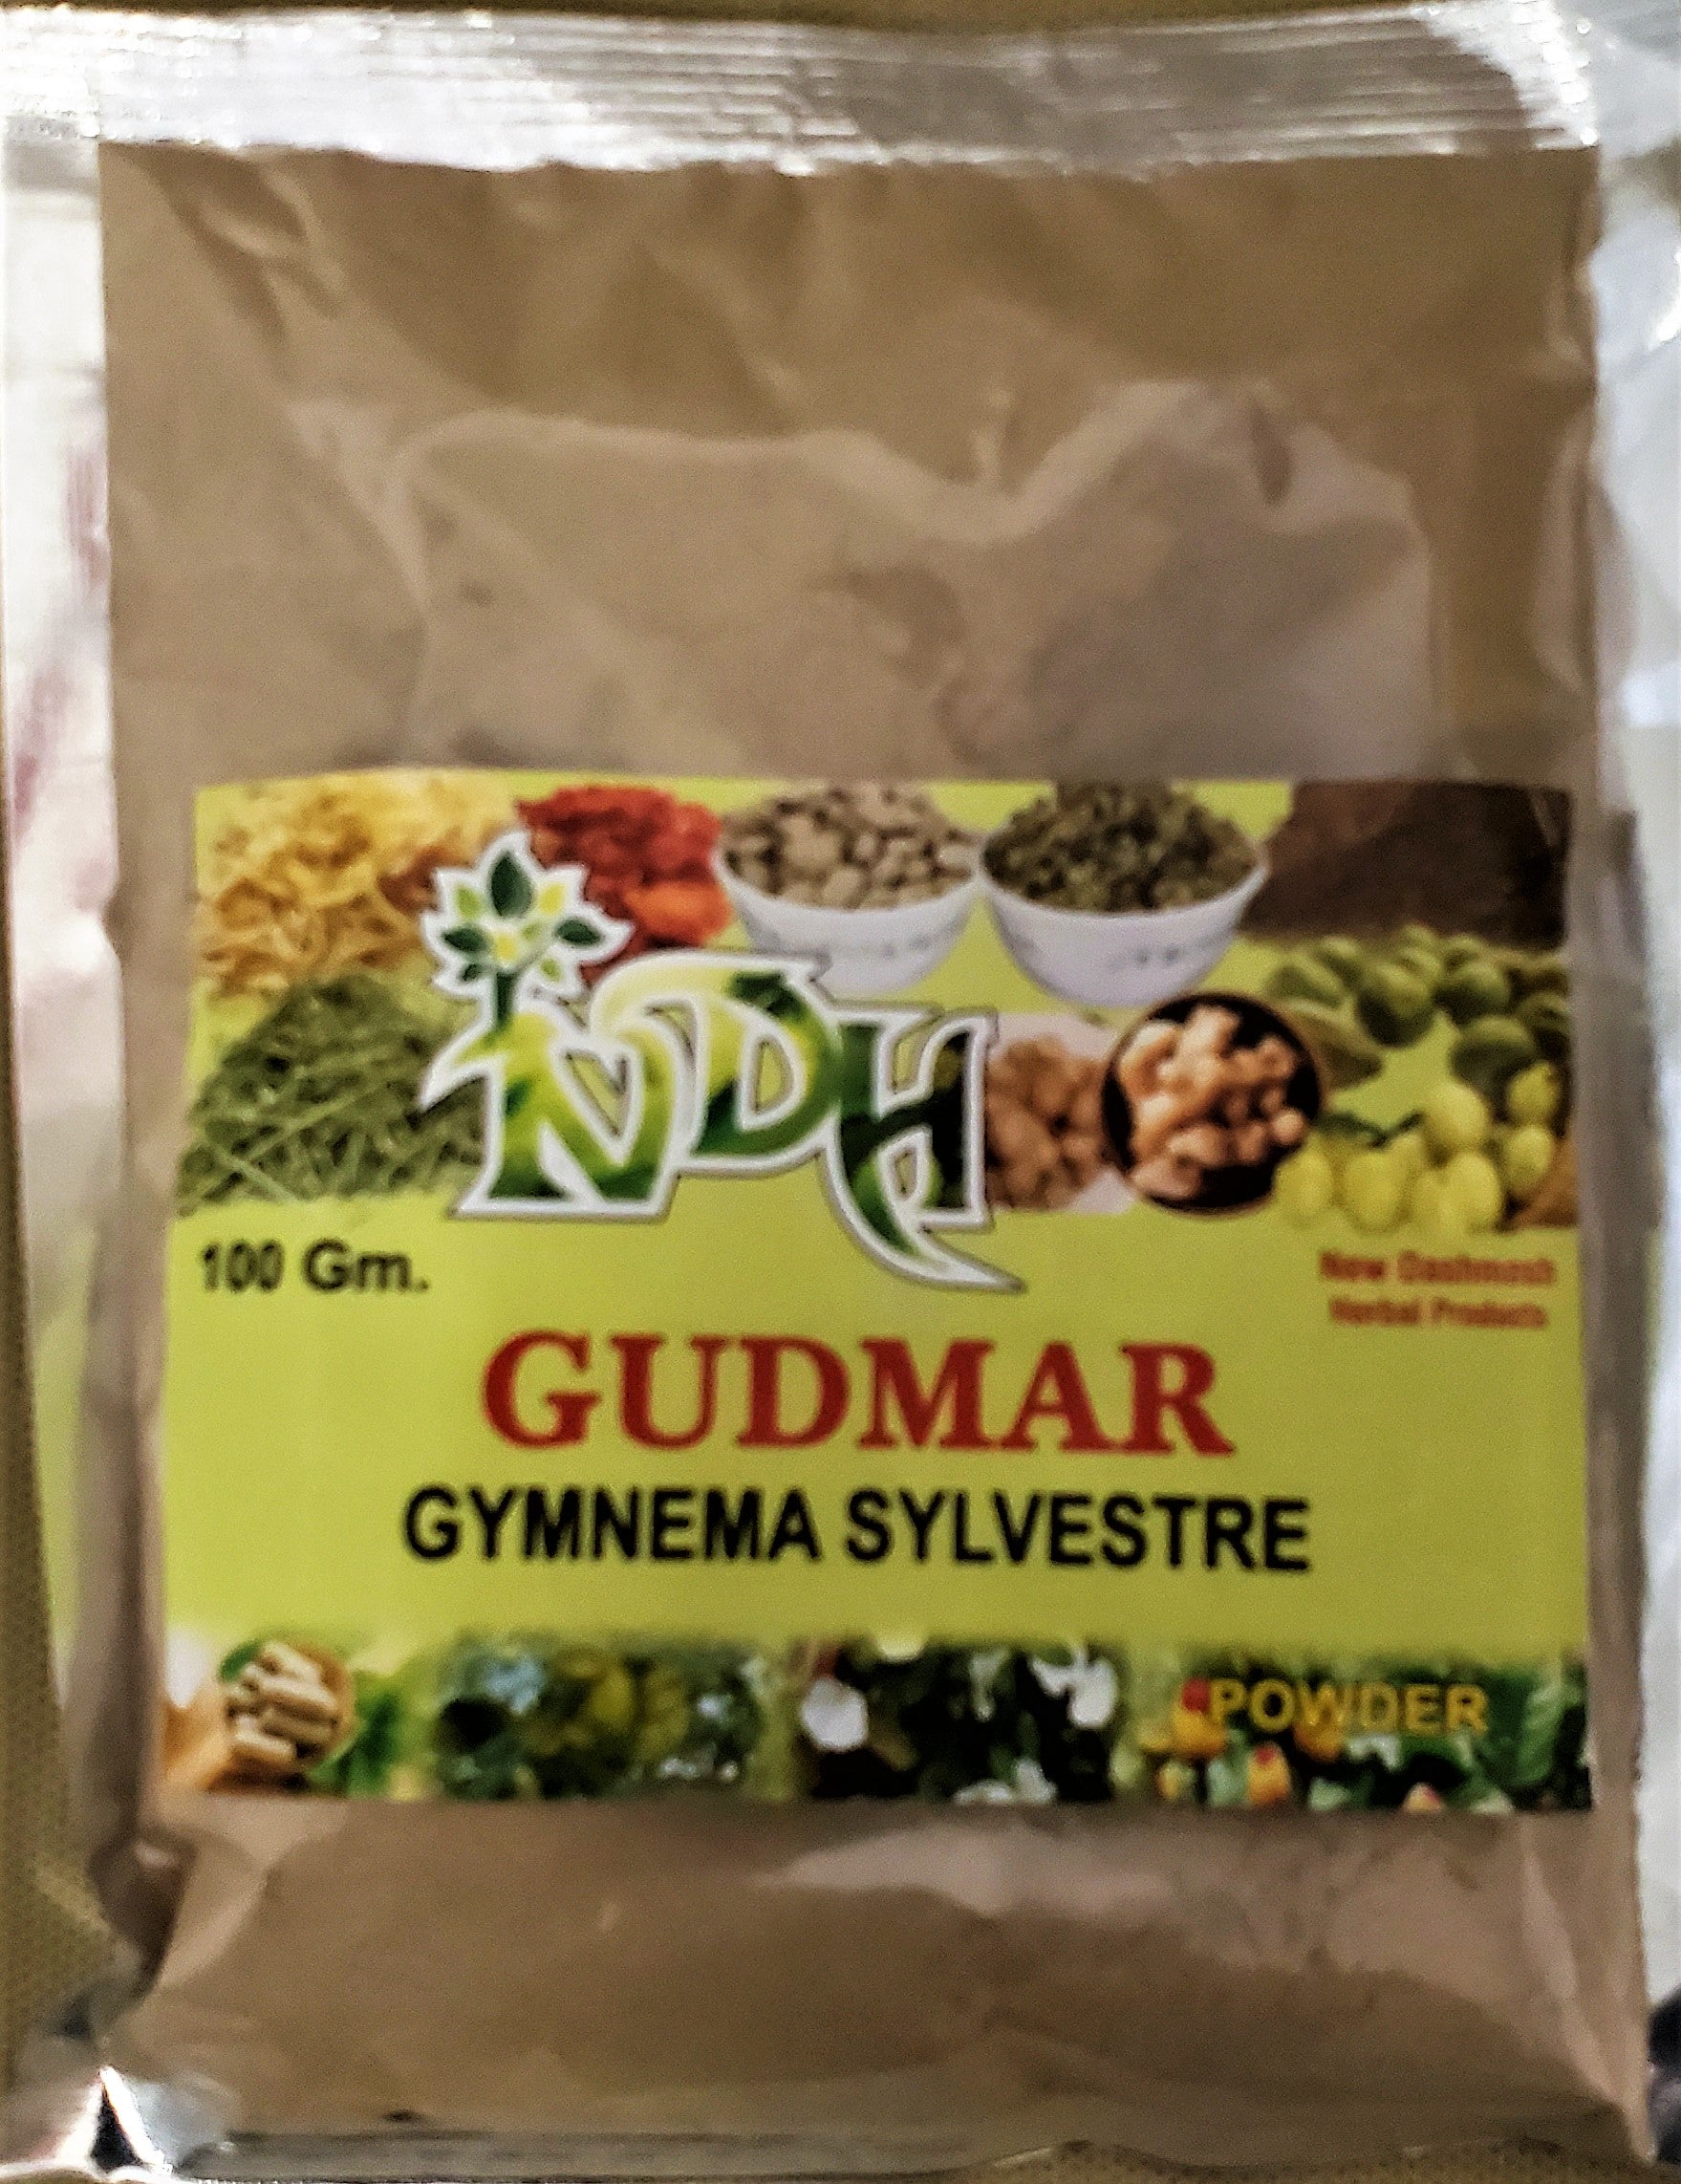 NDH Gudmar Powder